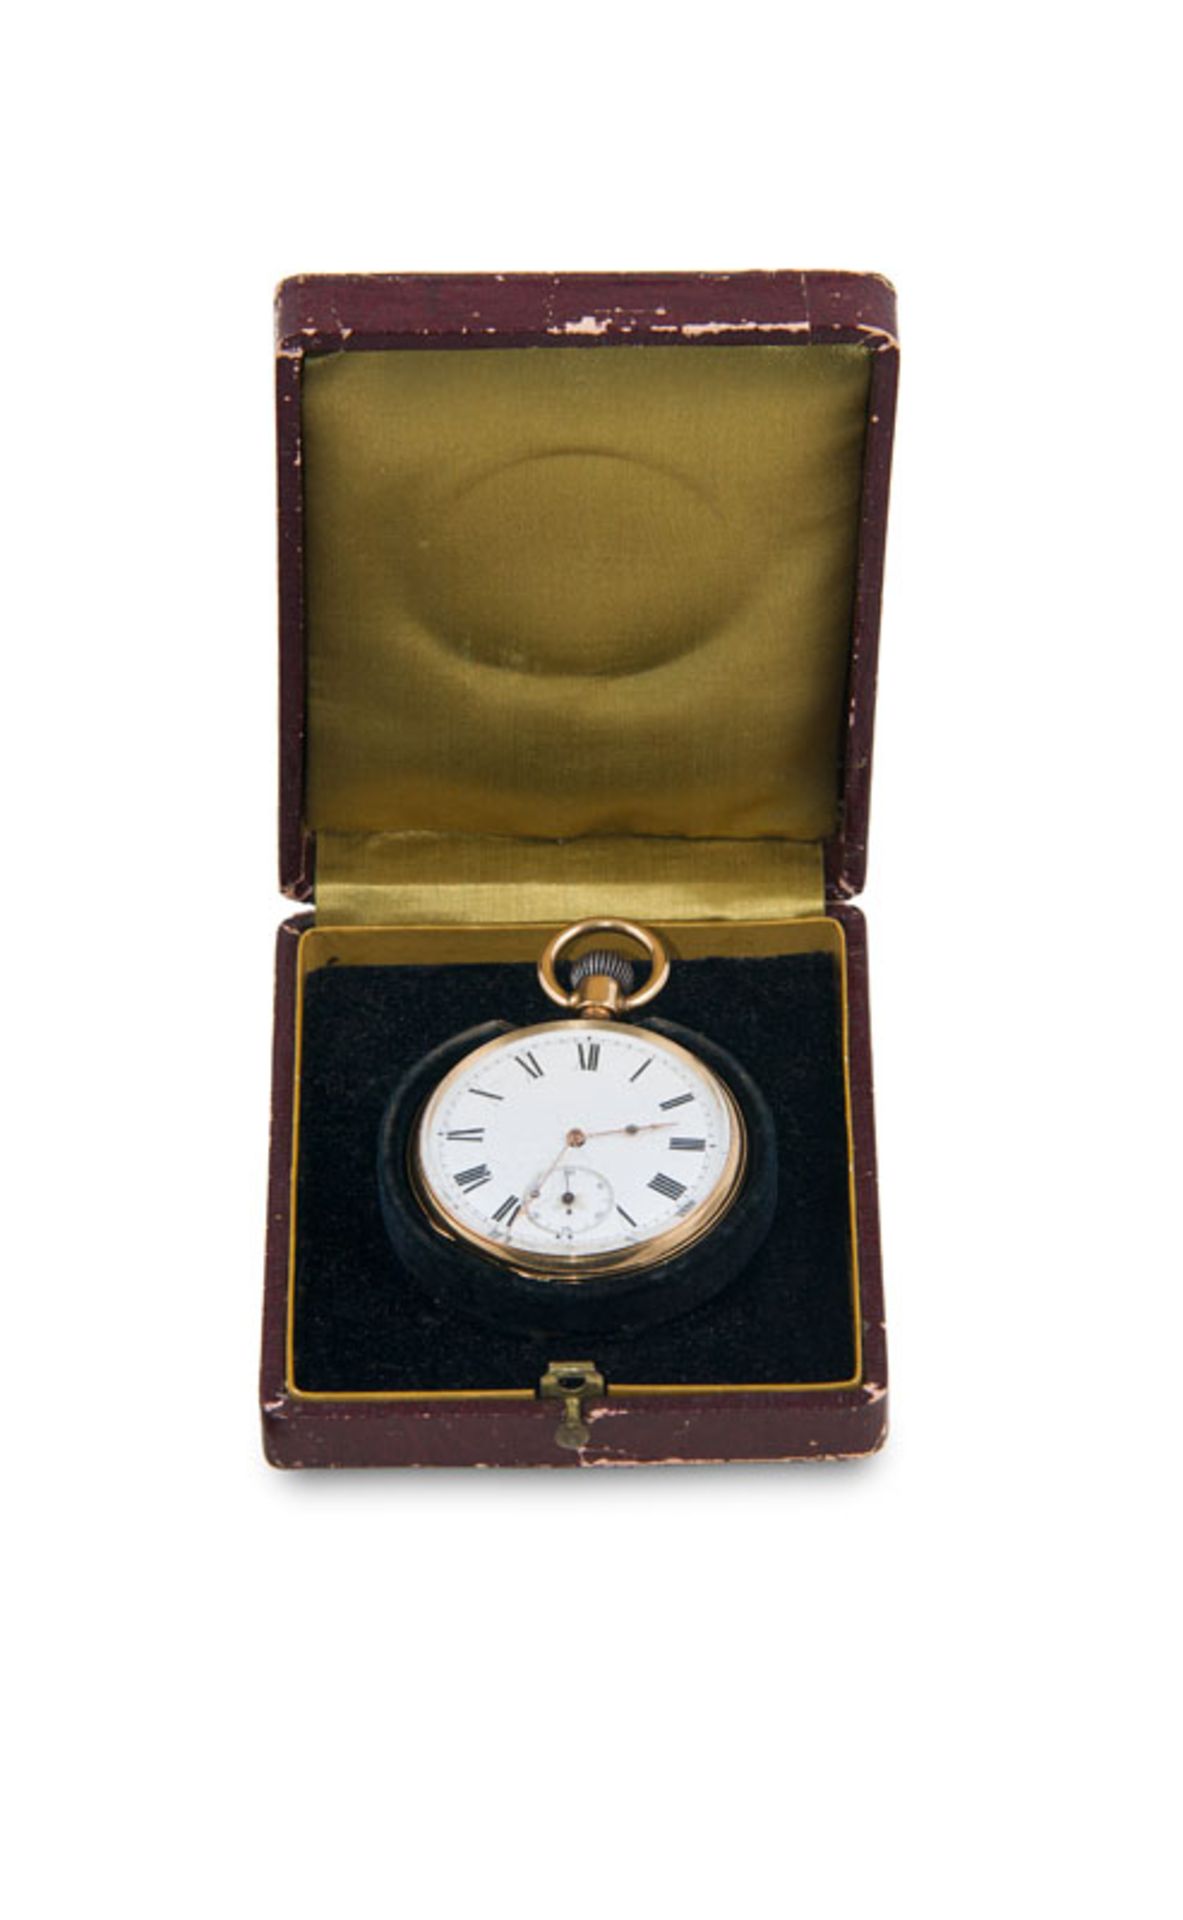 Uhren - - Taschenuhr mit Handaufzug. 19. Jhd. 14 kt (585er) Gold, Innendeckel wohl vergoldet. Das